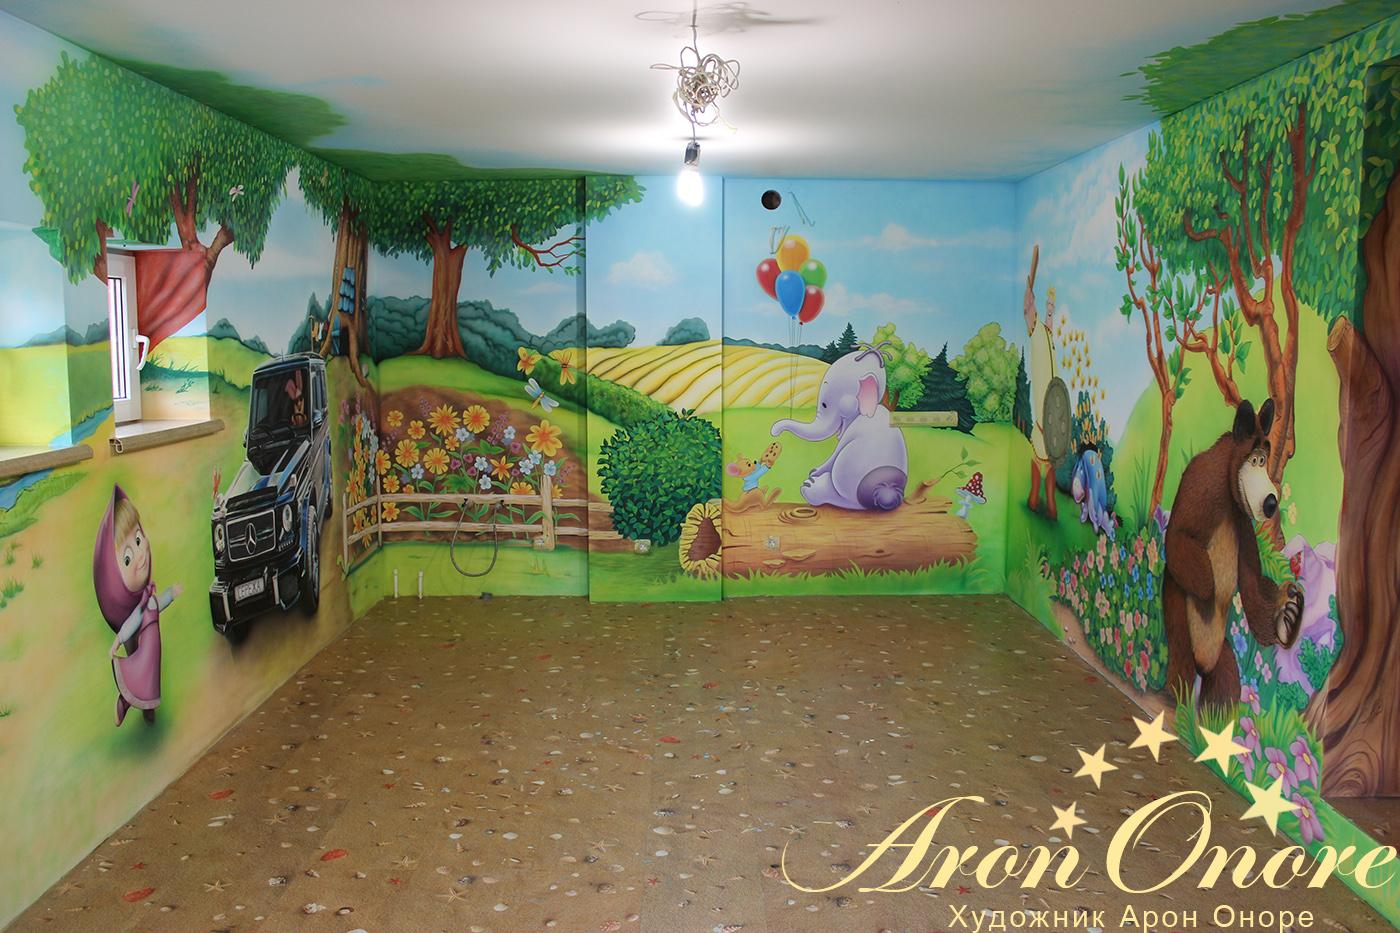 Готовый рисунок на стене в детской комнате – известные сказочные и мультяшные персонажи